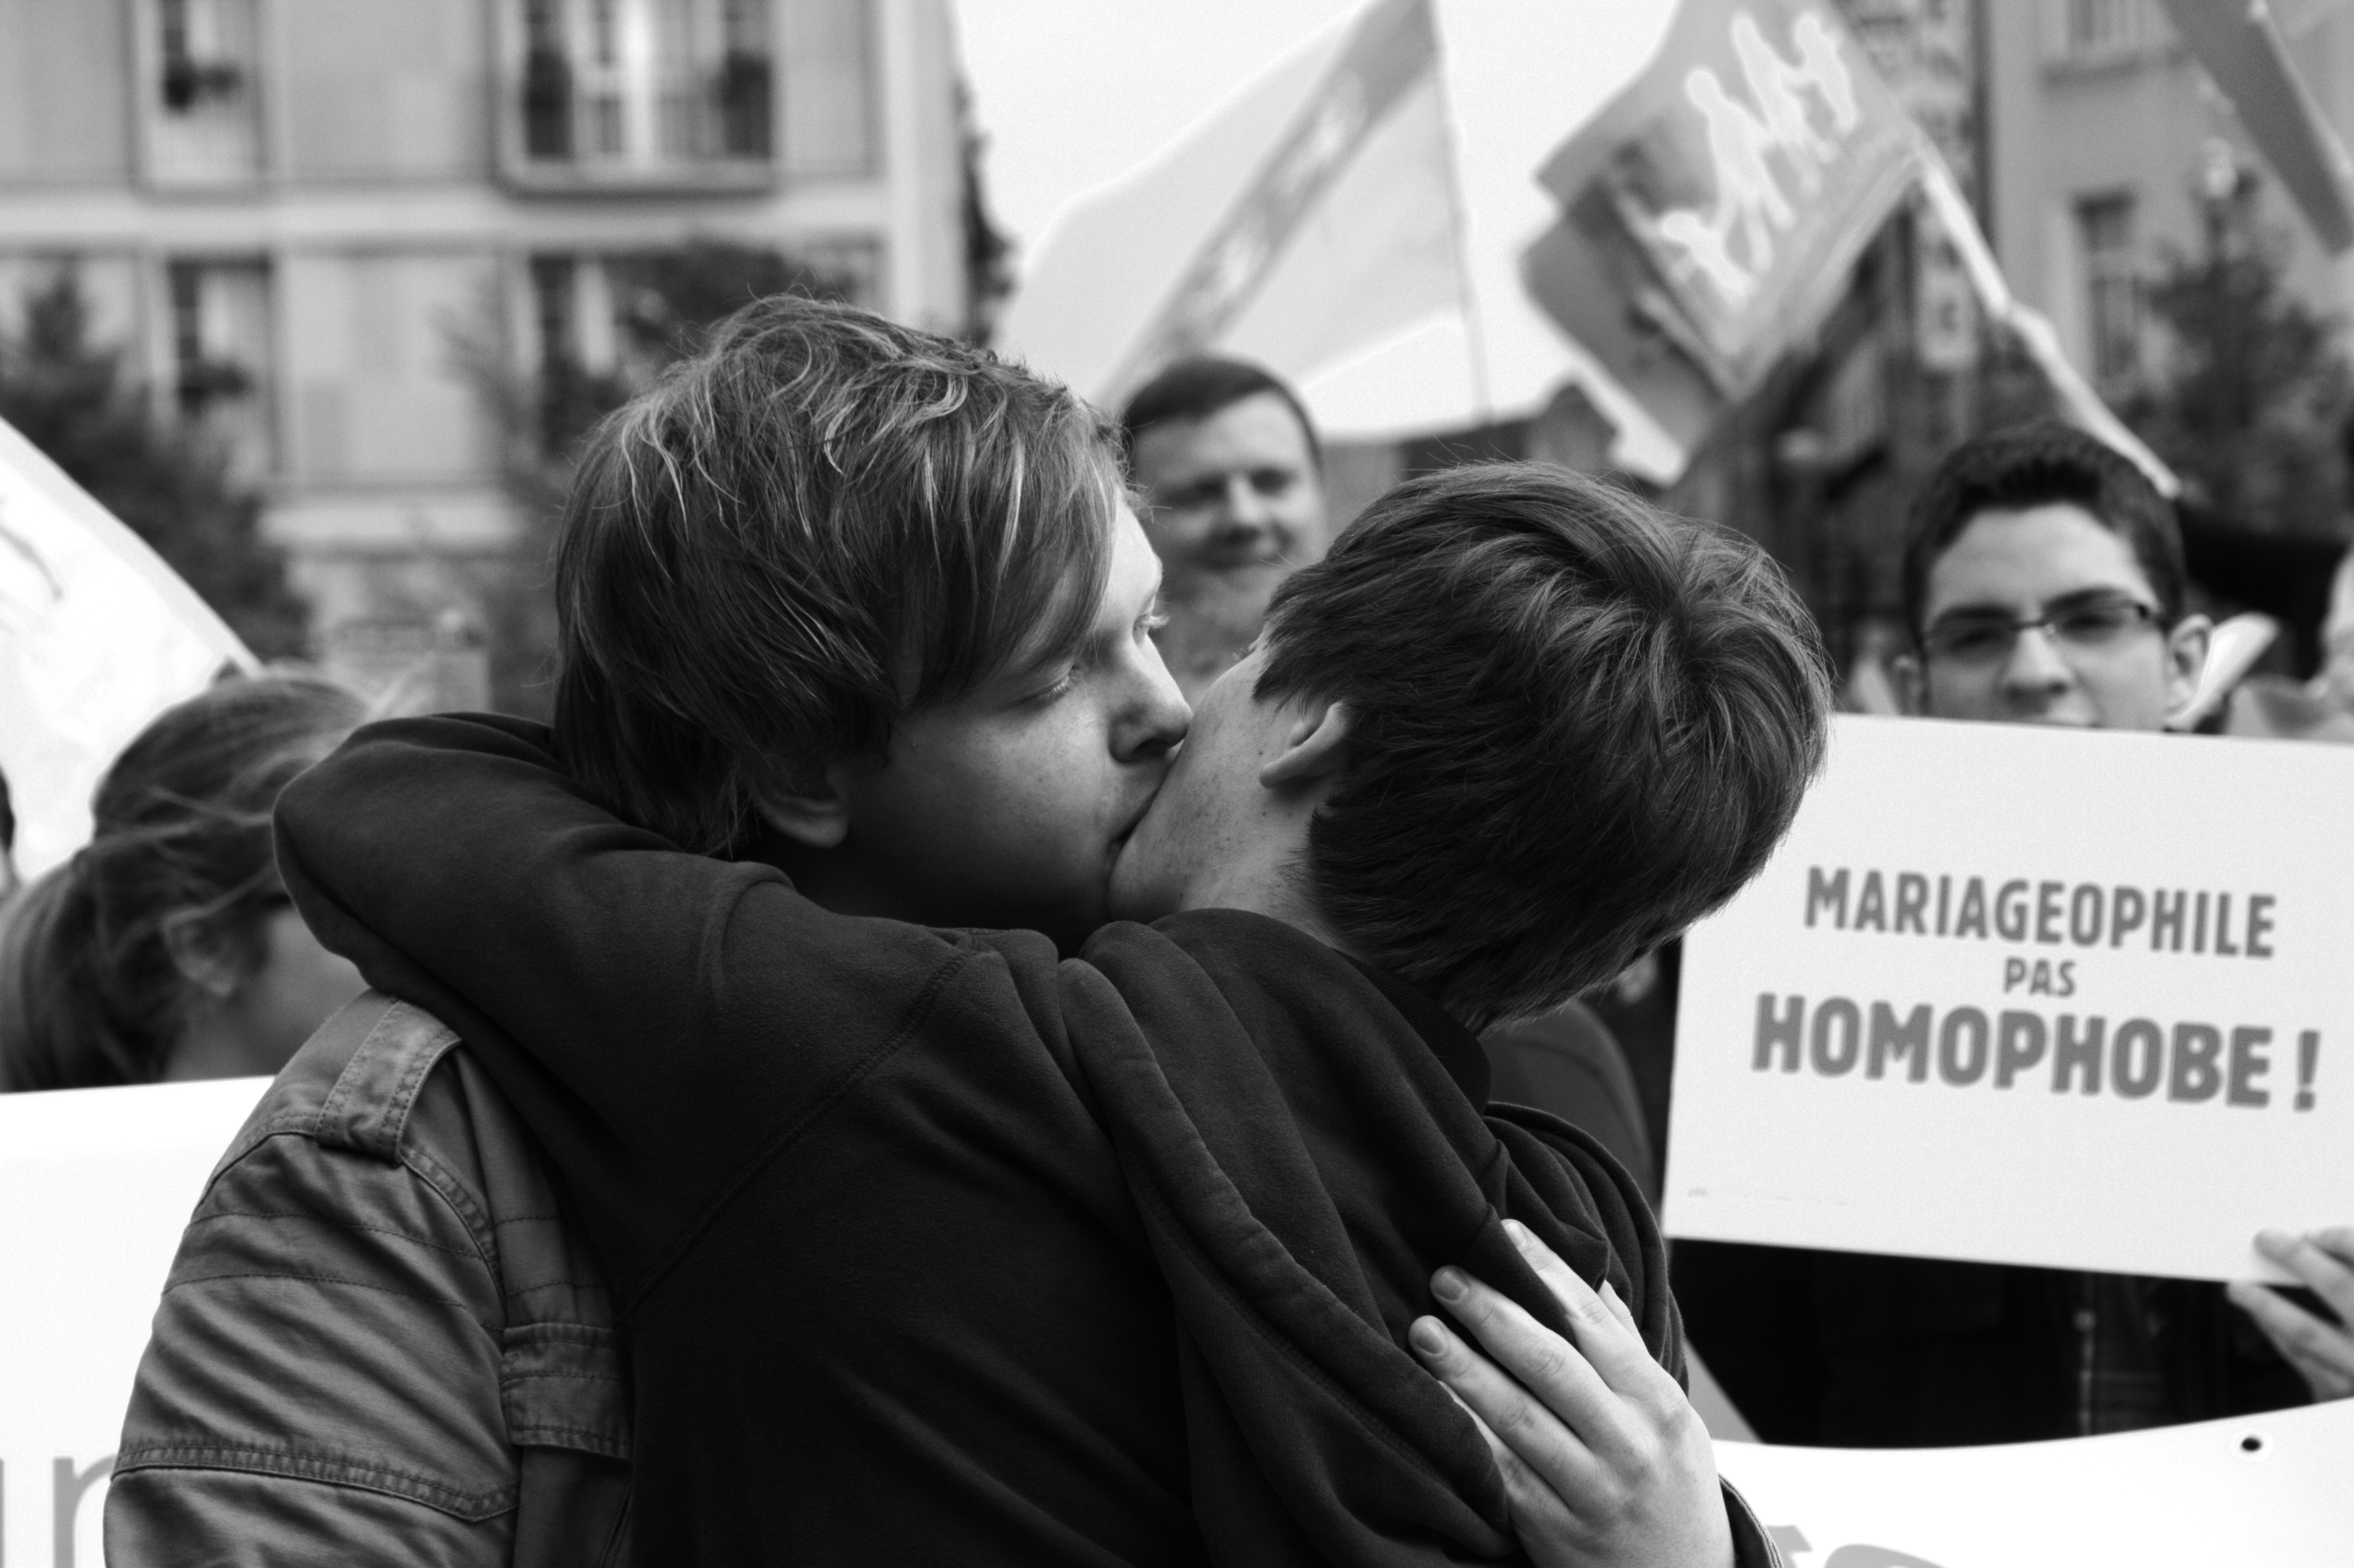 Le "kissing" public homo = paradoxal geste d' "amour" agressif et militant